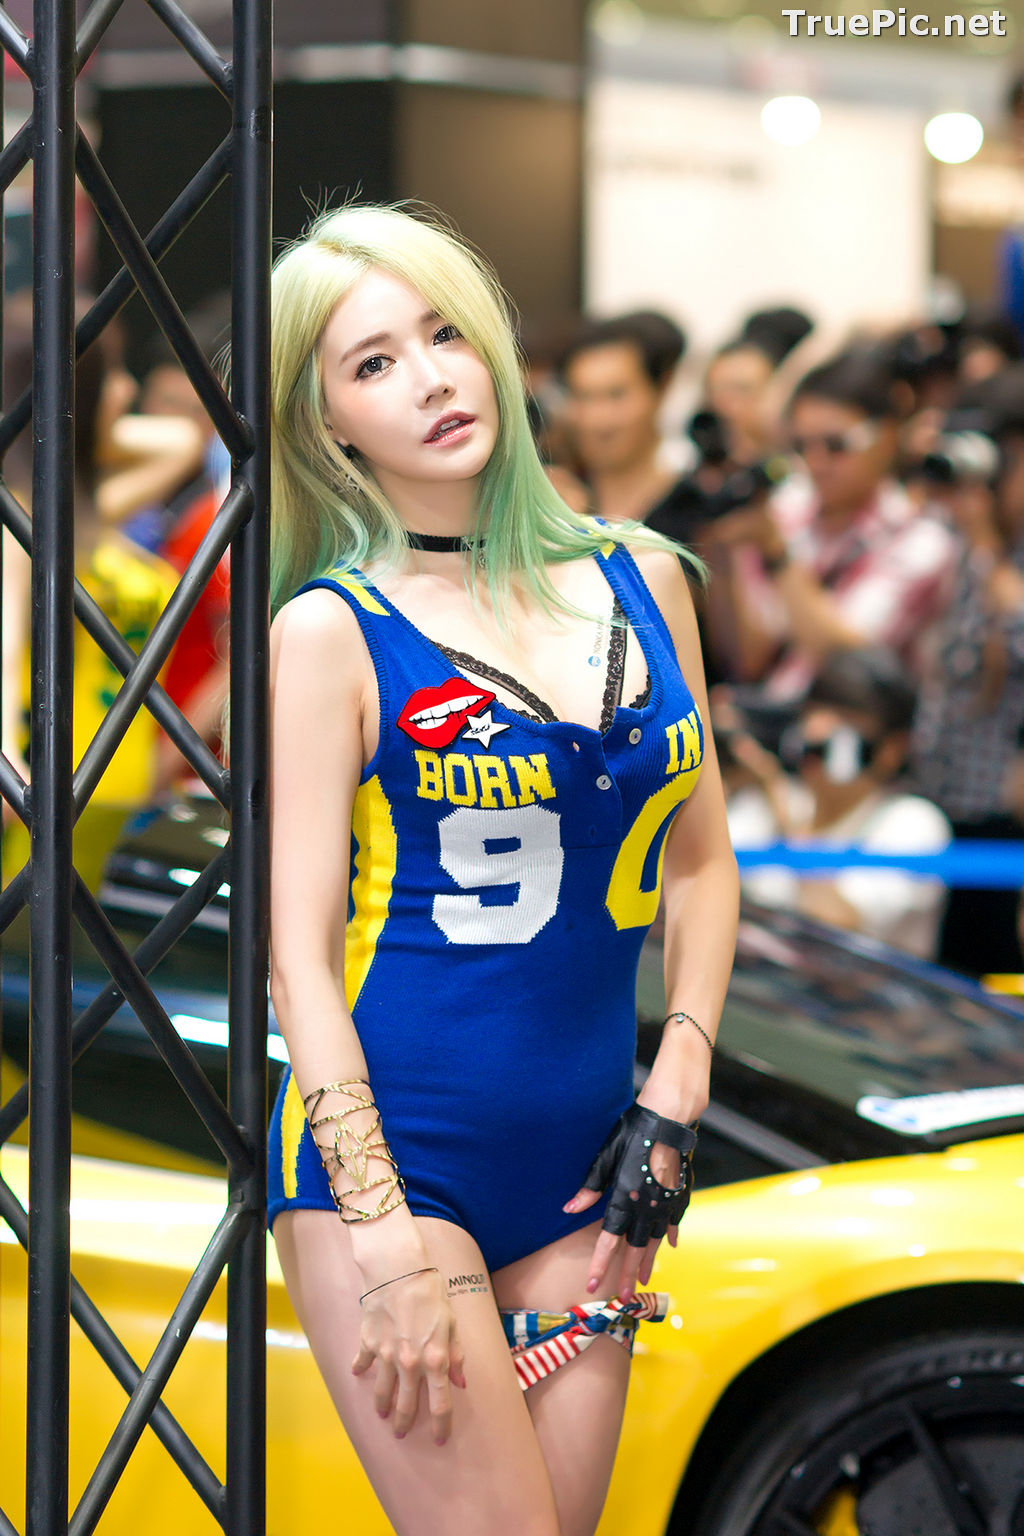 Image Best Beautiful Images Of Korean Racing Queen Han Ga Eun #5 - TruePic.net - Picture-37